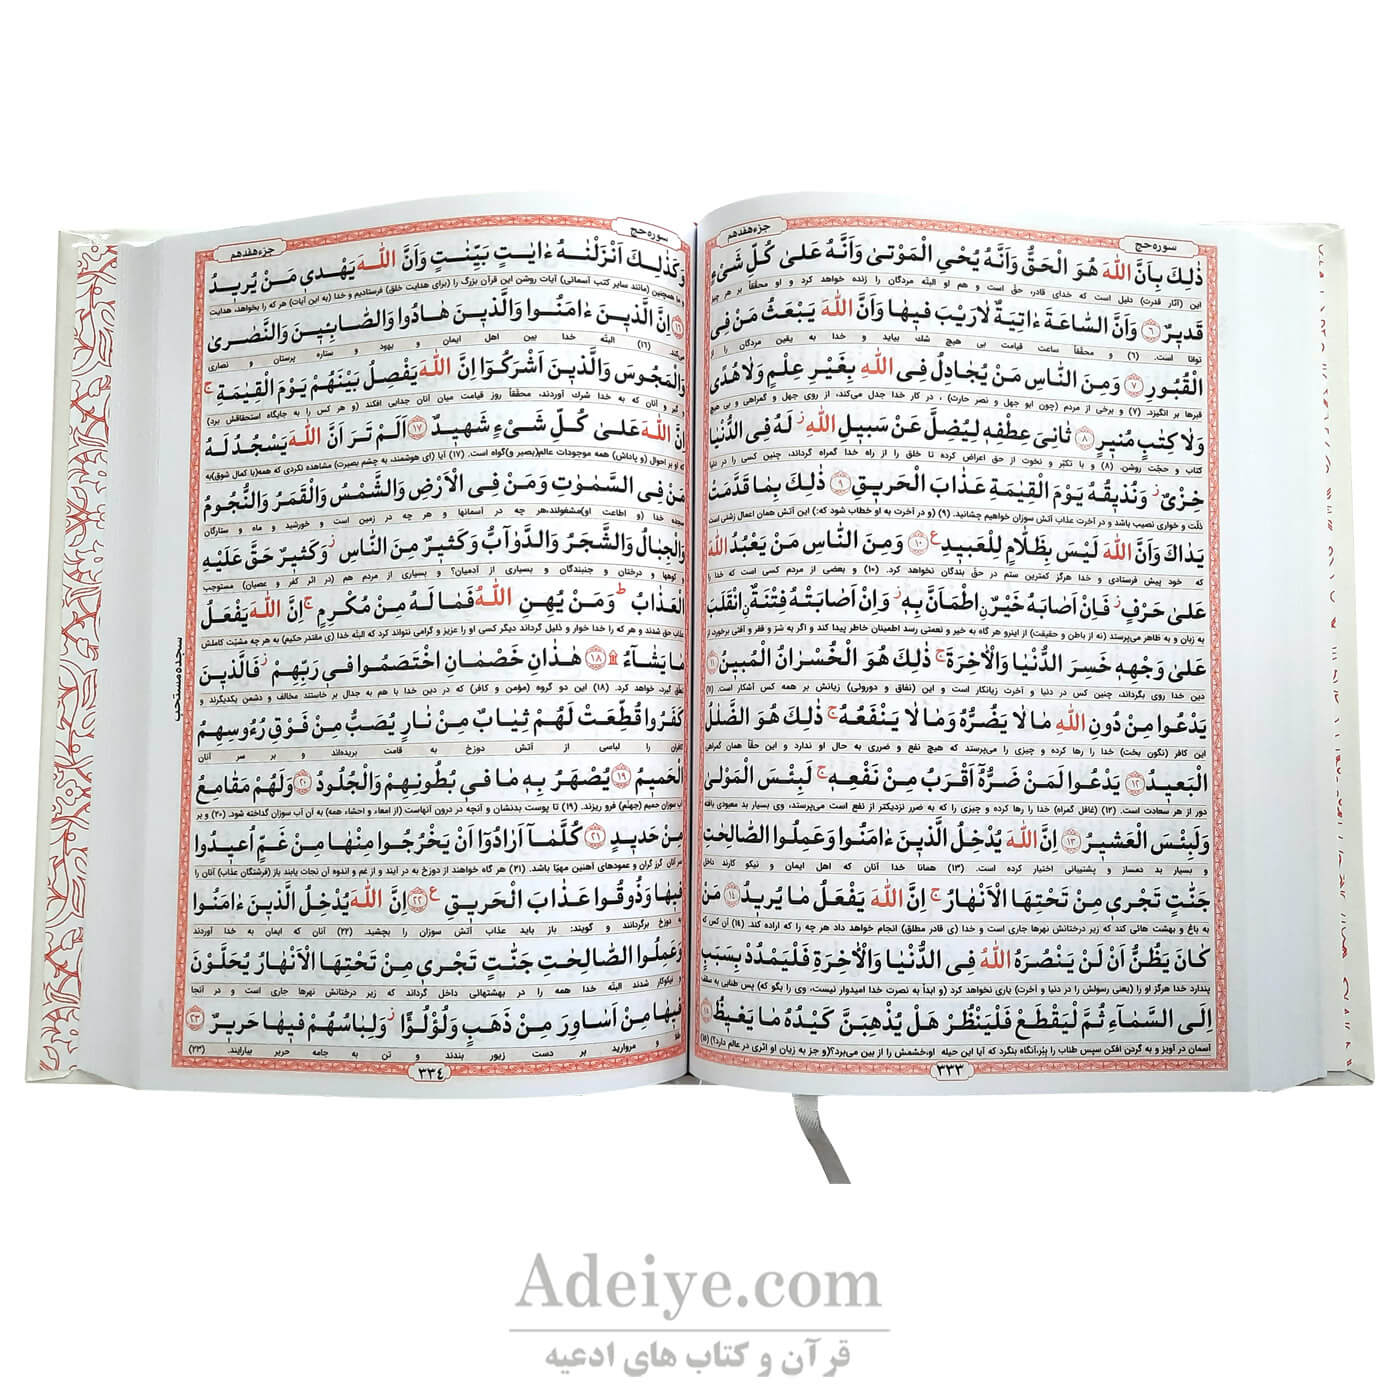 قرآن کامپیوتری بر اساس خط عثمان طه و درشت شده